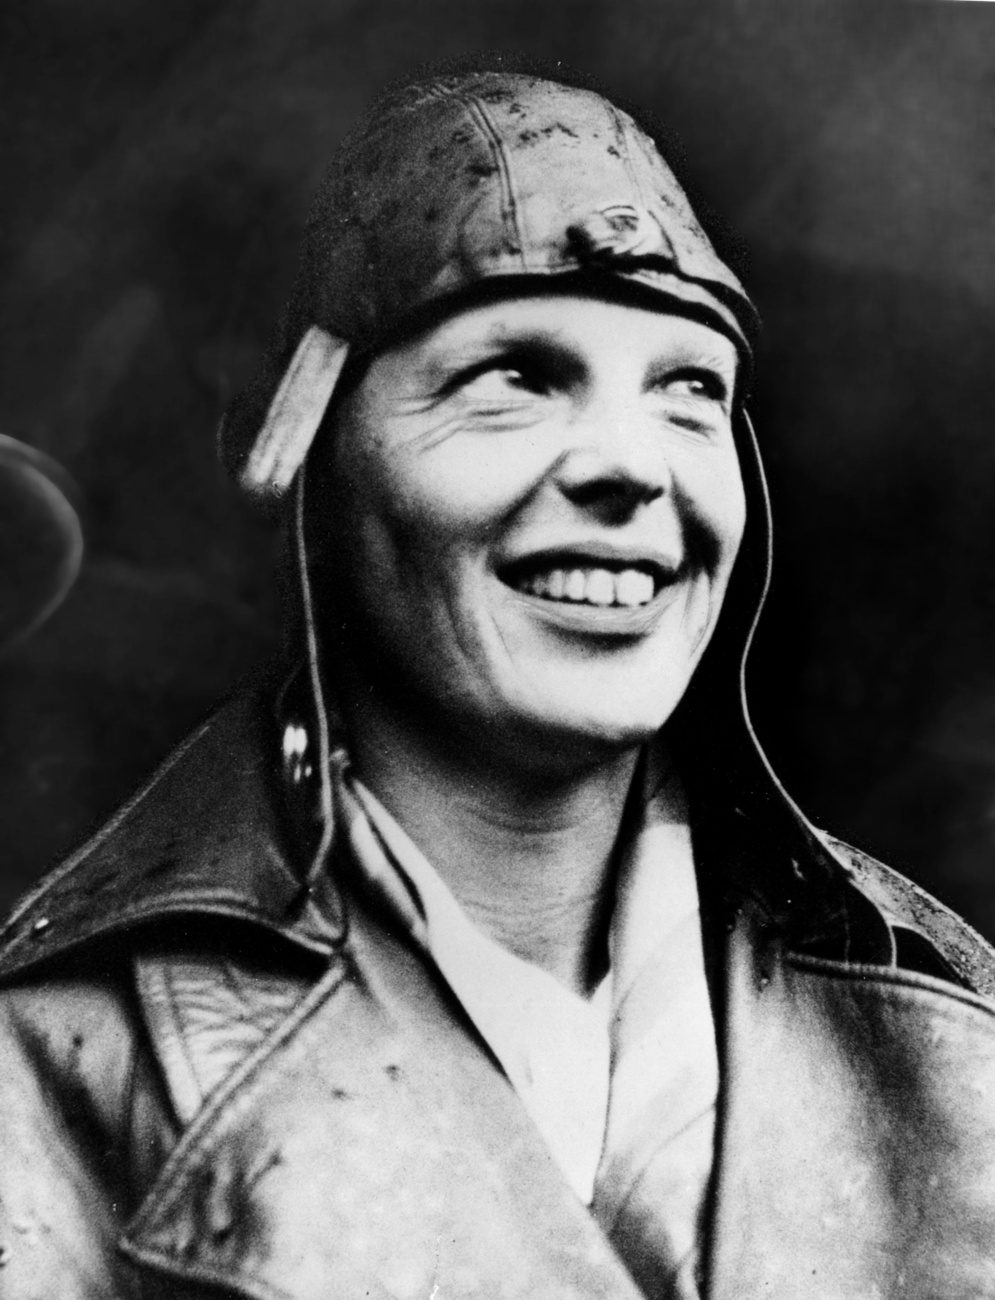 Earhart 1937. július 2-án helyi idő szerint 7 óra 42 perckor küldte az utolsó üzenetet a levegőből. Az  üzenetben szereplő koordináták valószínűleg tévesek voltak, és nem a Howland-sziget, hanem a Gardner-sziget (mai nevén Nikumaroro) felé tartottak. A TIGHAR kutatói szerint a kényszerleszállást túlélők addig küldhették a rádiójeleket, amíg az ár le nem mosta a zátonyról a repülőgépet és utasait. Mindez az előtt történhetett, hogy az amerikai haditengerészet gépei átfésülték a terepet.